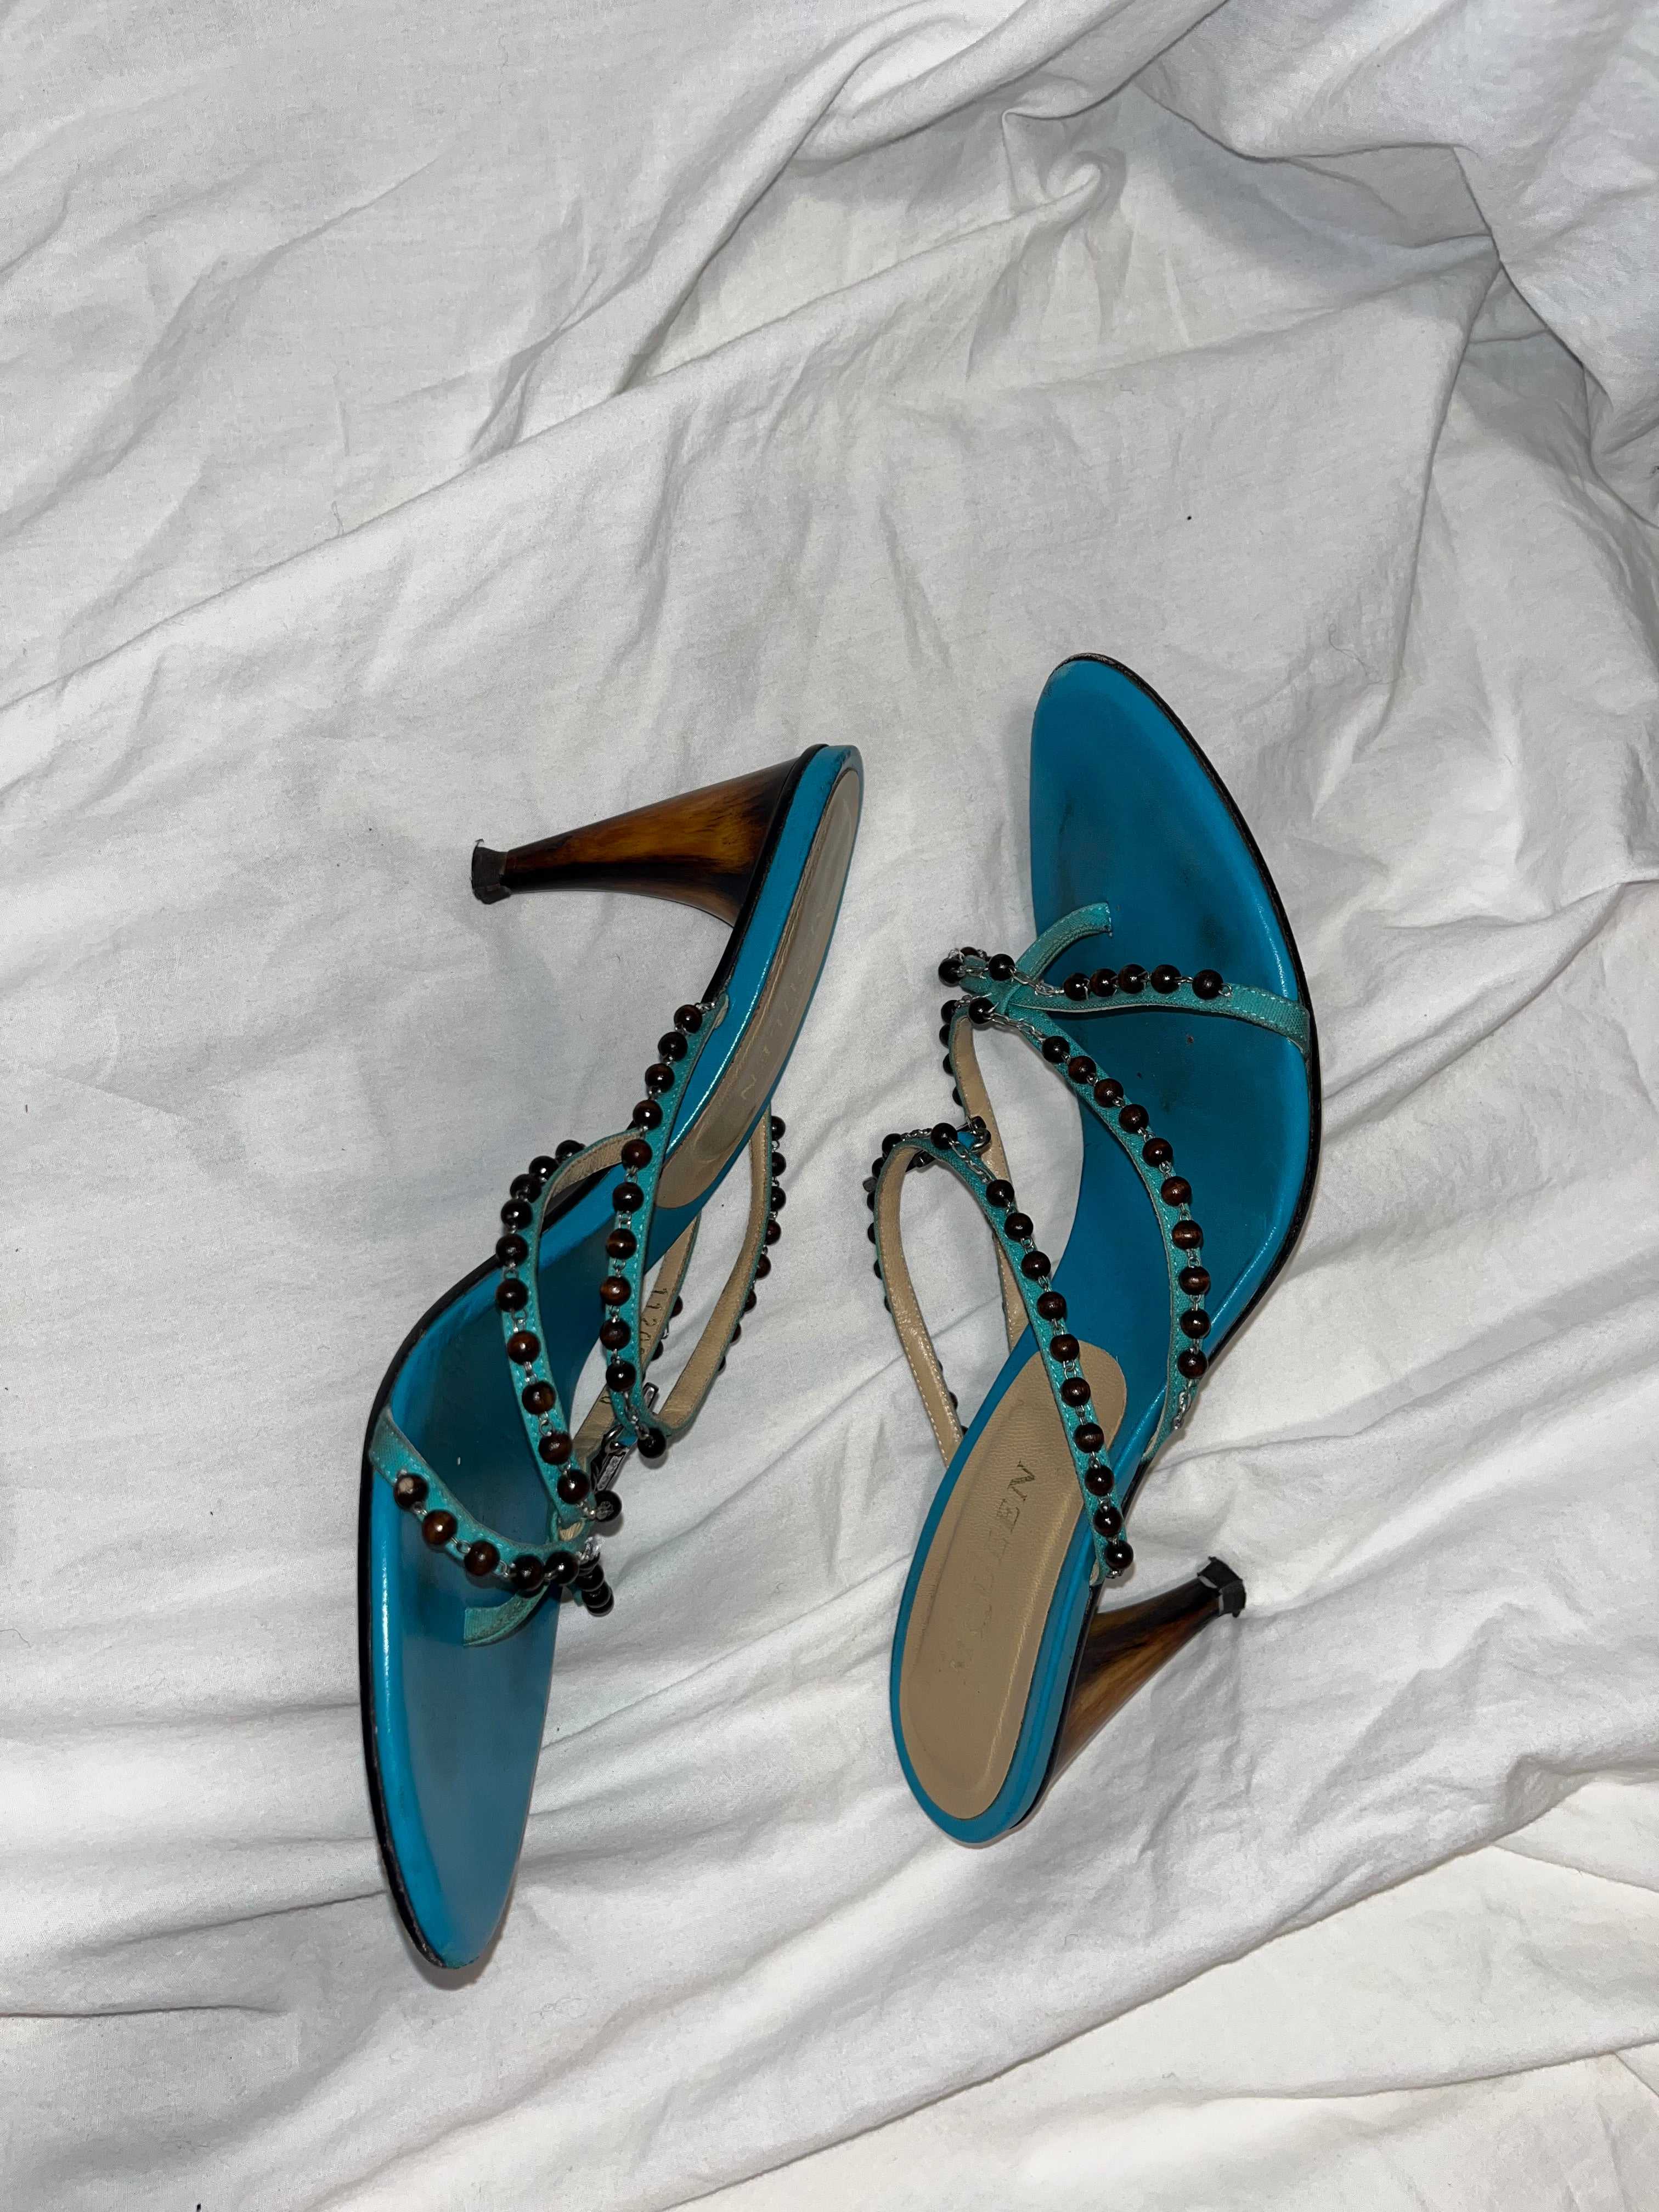 Alexander Mcqueen Spring 2003 rosary heels